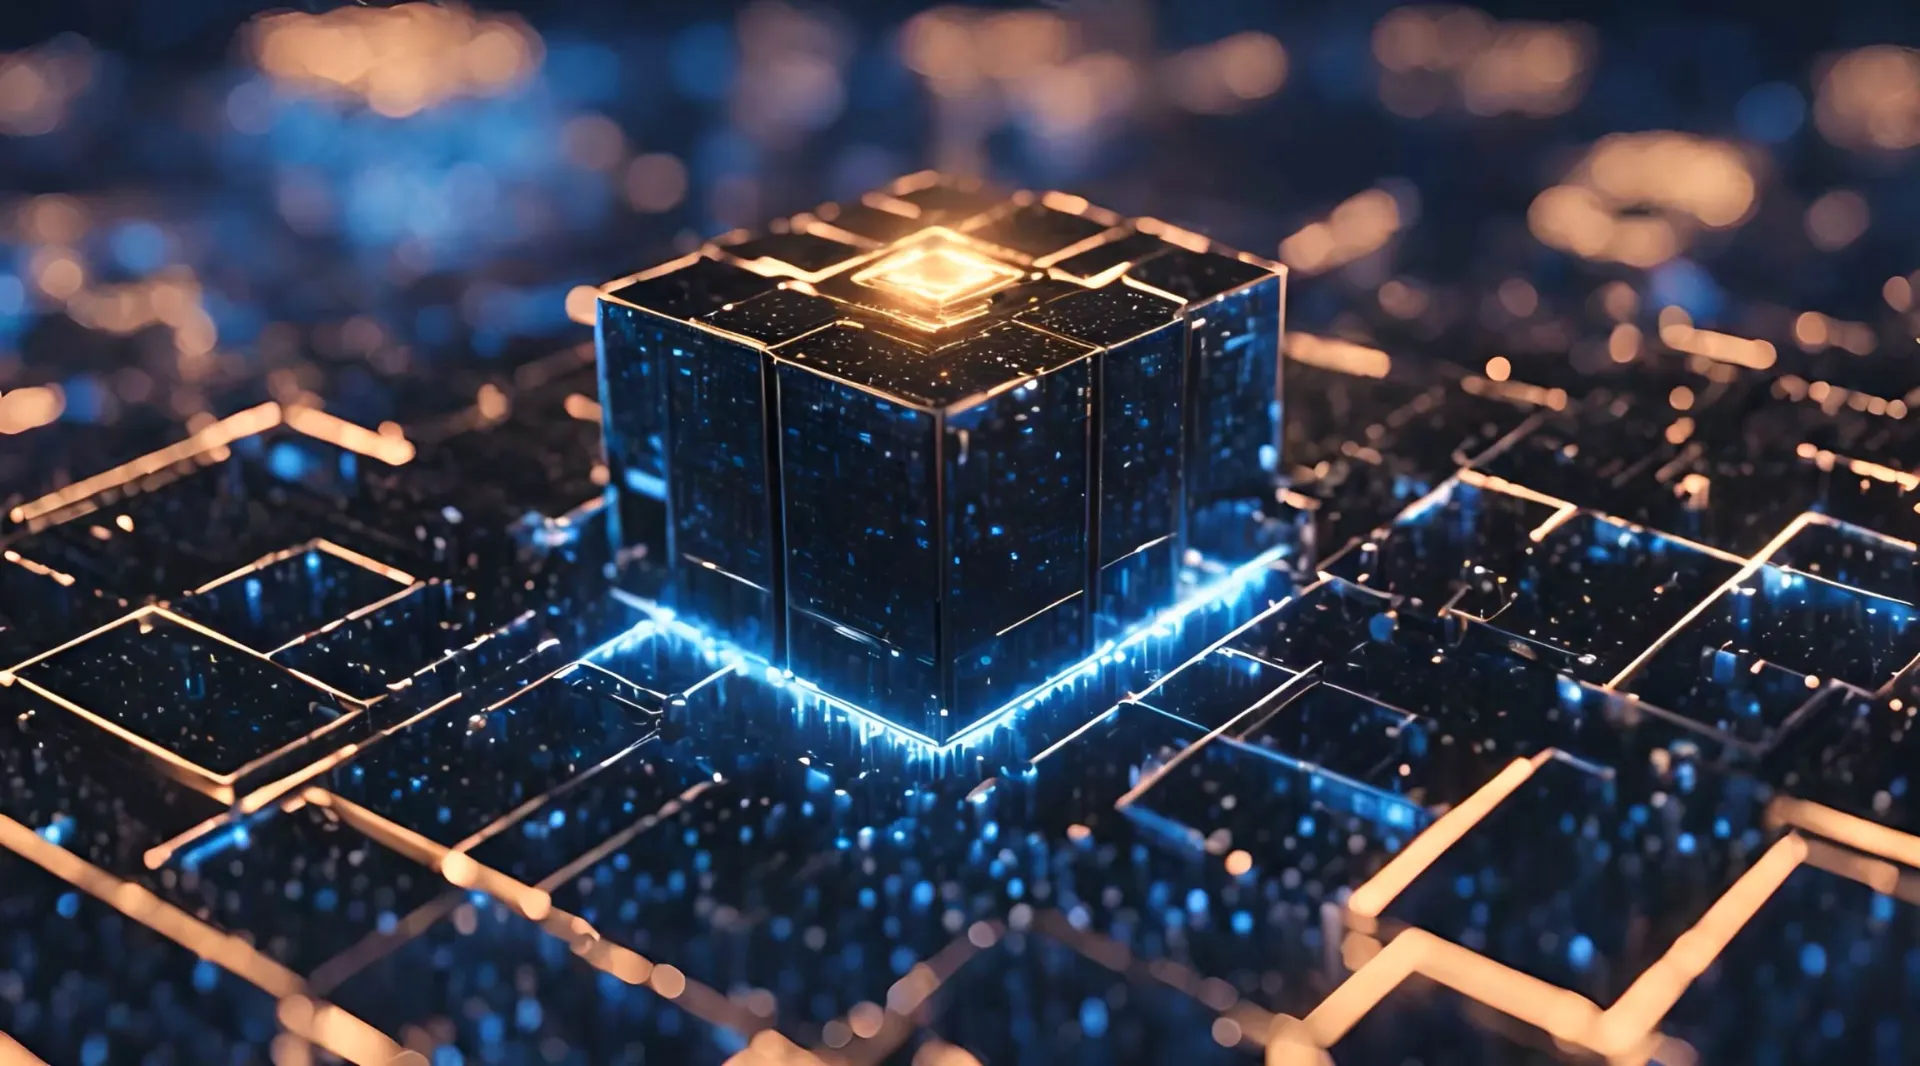 Neon Nexus Futuristic Cube Network Design Stock Video